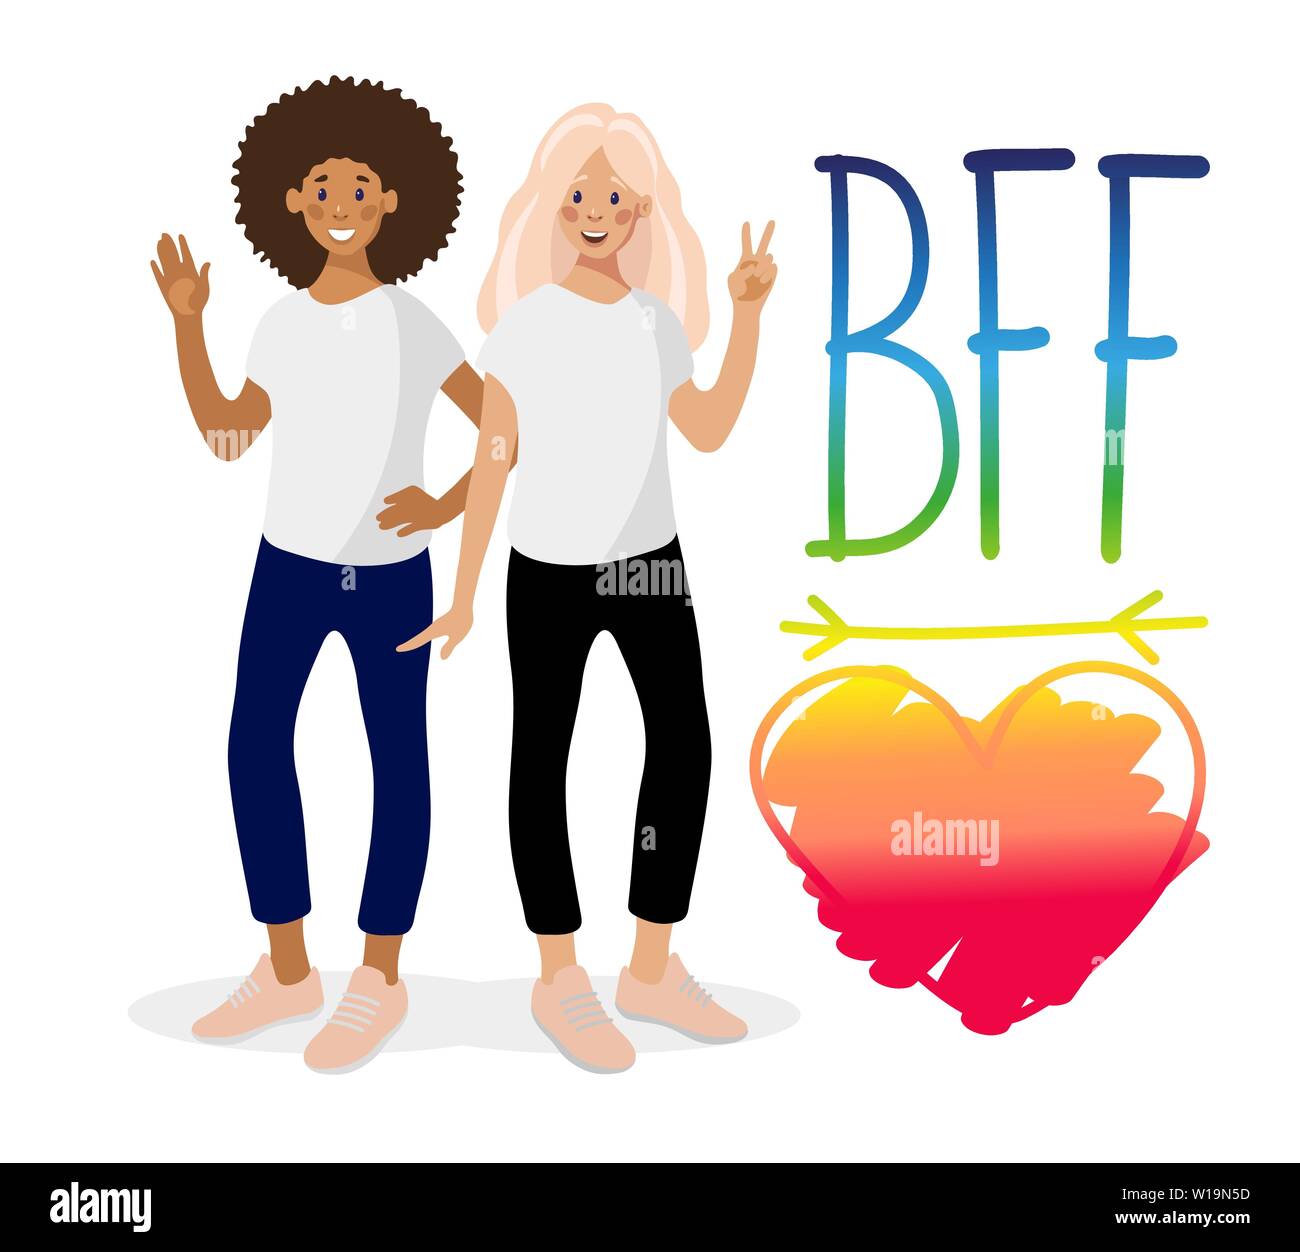 Zwei lächelnde Mädchen, Hand gezeichnet Phrase BFF und Herz auf weißem Hintergrund. Die besten Freunde sind afrikanische amerikanische und kaukasische Mädchen. Vector Illustration in flachen Cartoon-stil auf weißem Hintergrund. Stock Vektor